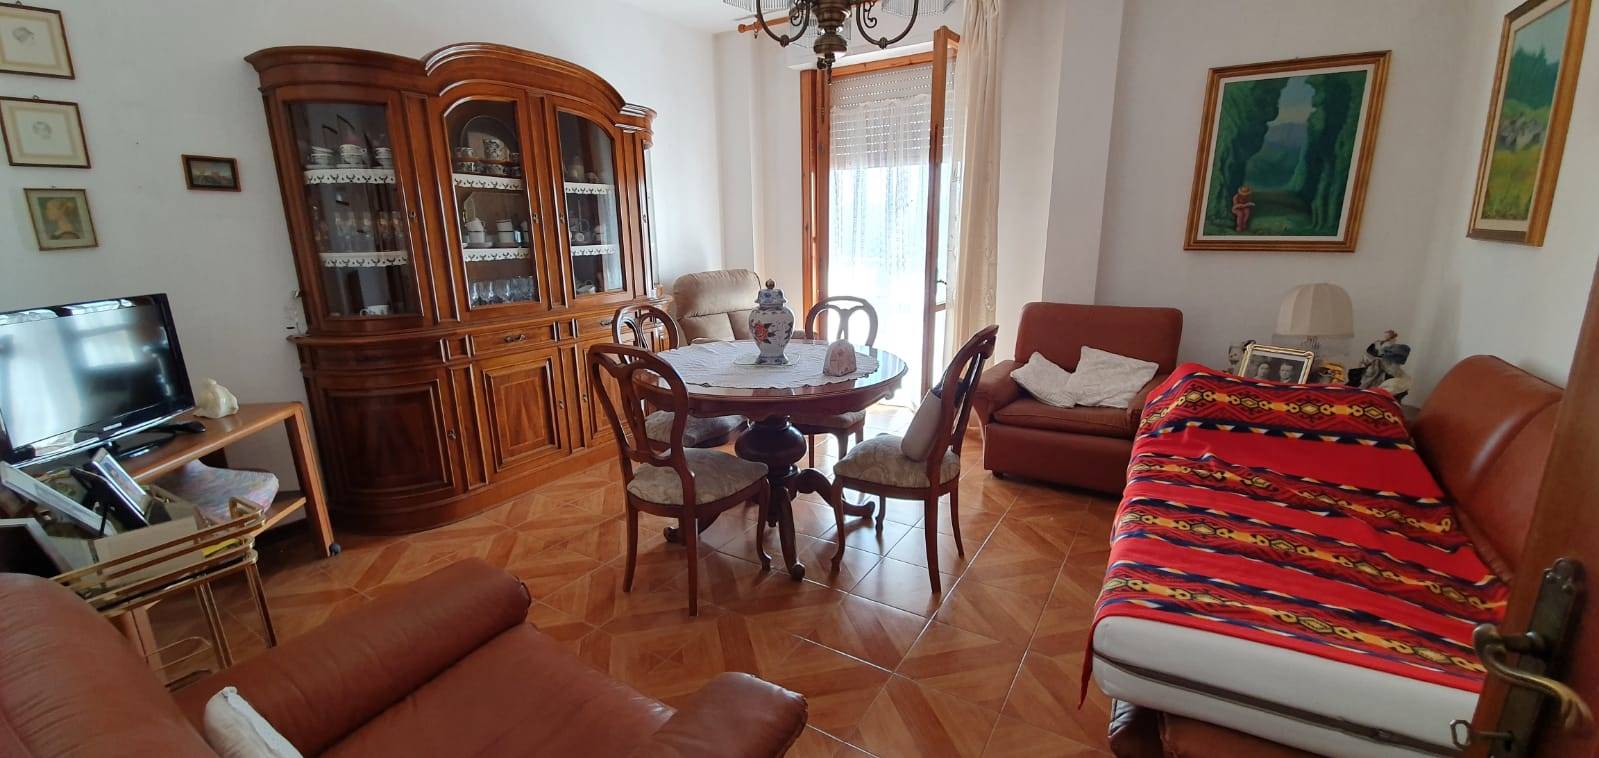 Appartamento in affitto a Follonica, 4 locali, prezzo € 500 | CambioCasa.it